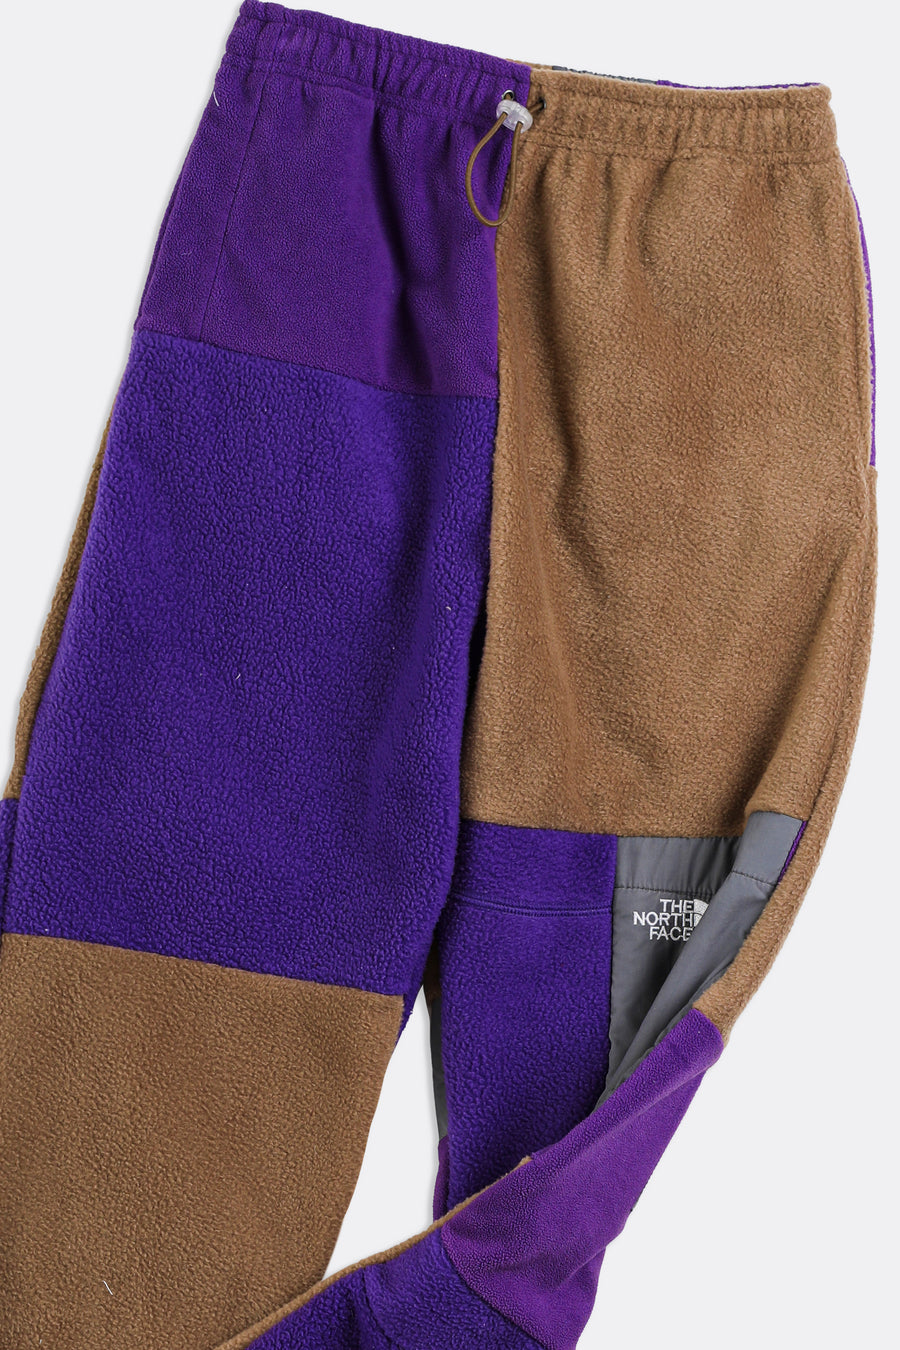 Unisex Patchwork North Face Fleece Pant - Women-XS, Men-2XS